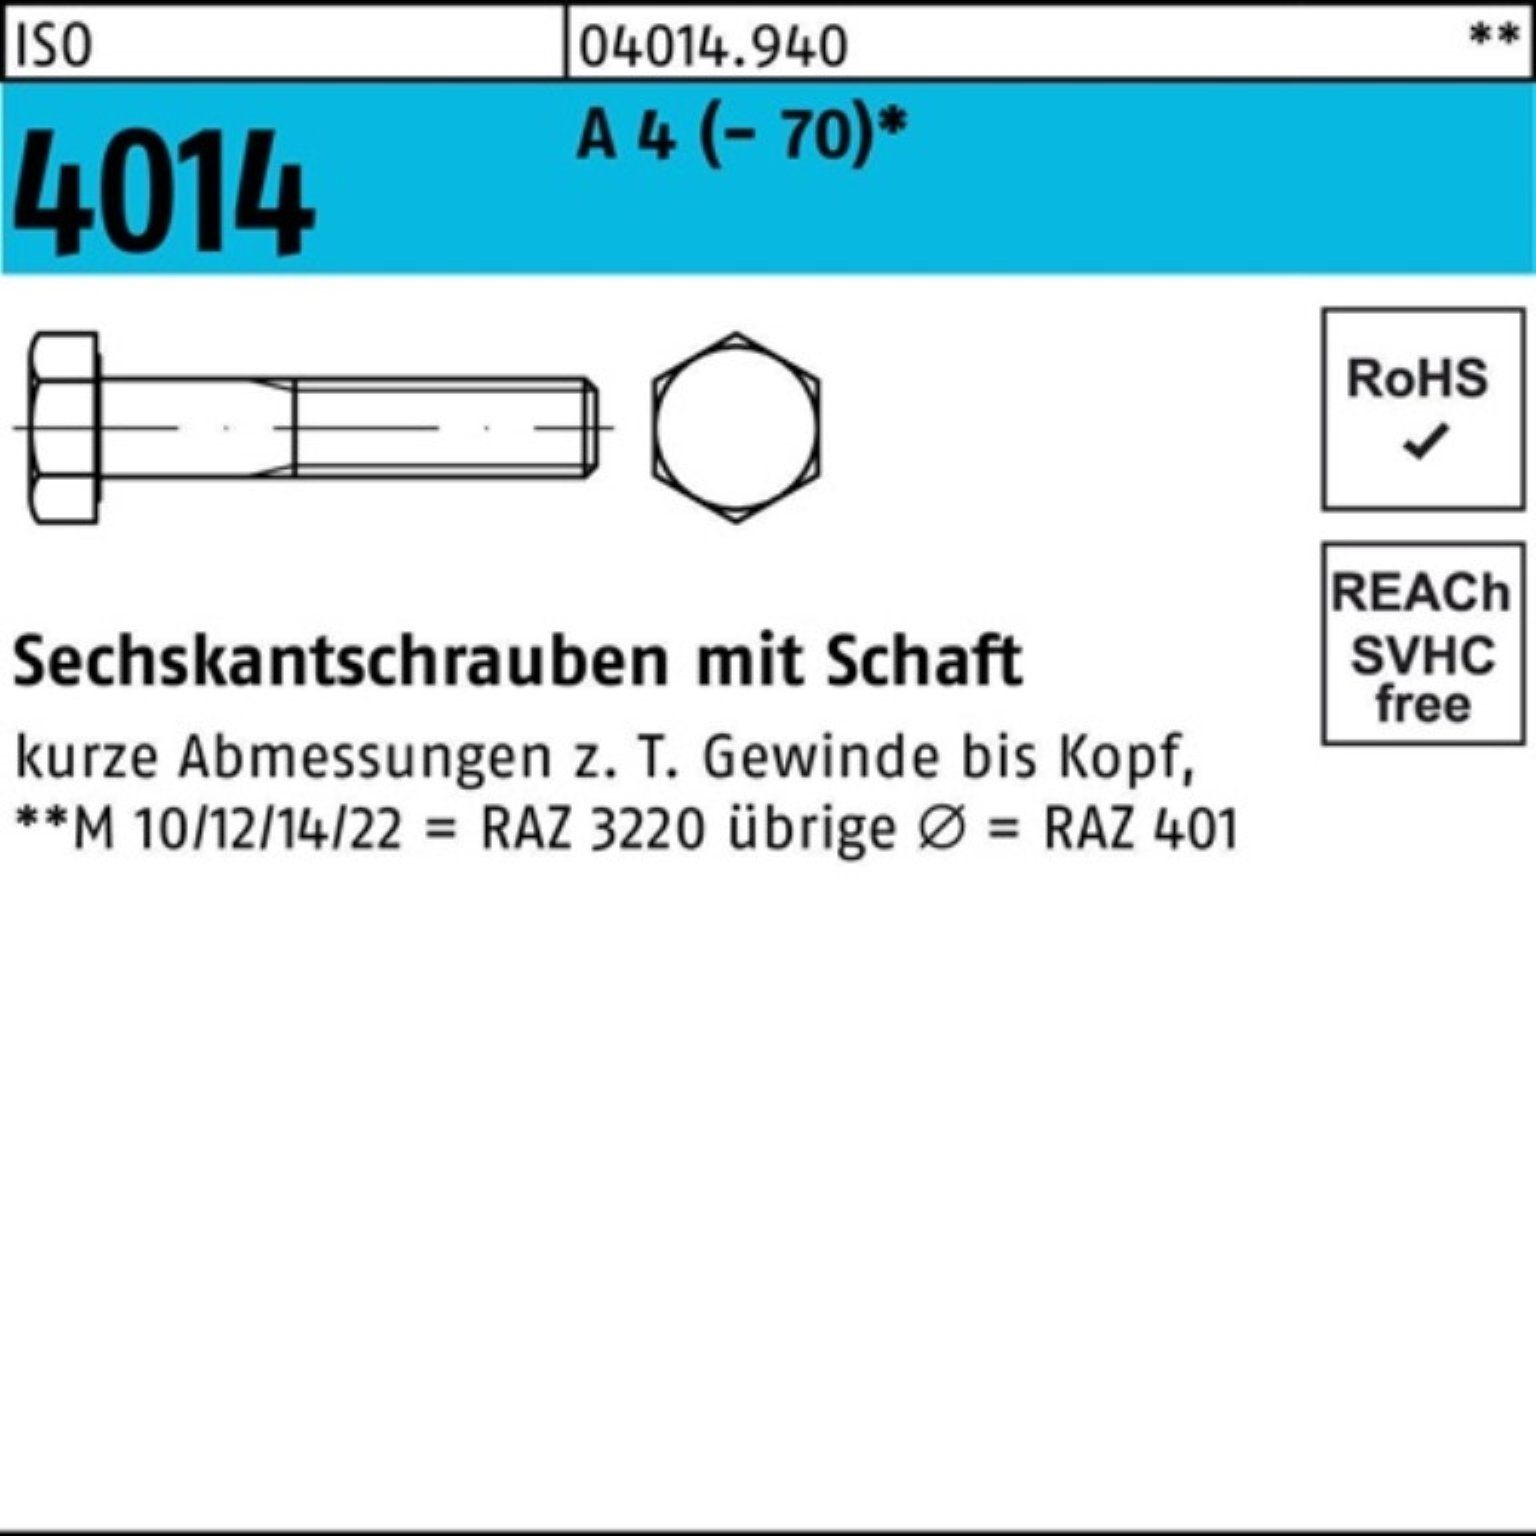 1 ISO Sechskantschraube 4014 M20x 100er Sechskantschraube 290 A ISO 4 Bufab Schaft Stück Pack